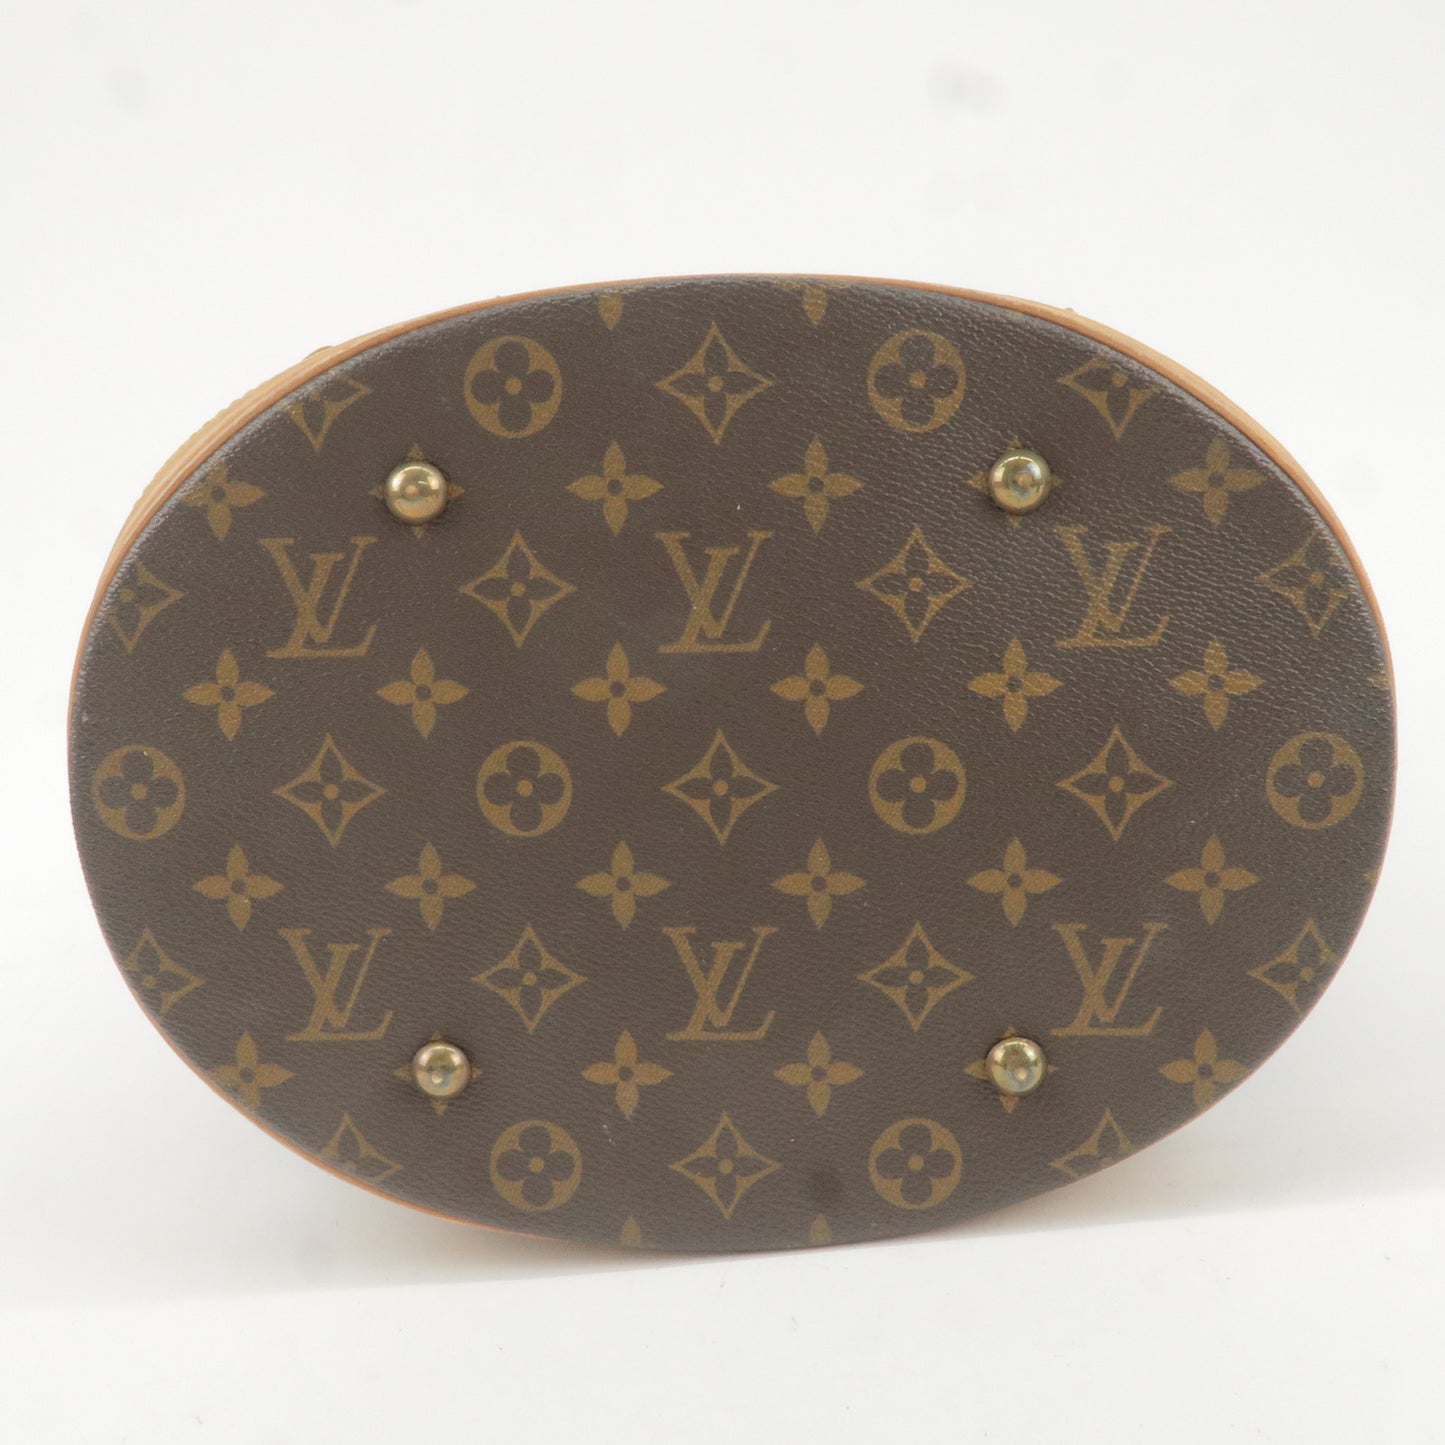 Louis Vuitton Monogram Bucket GM Shoulder Bag & Pouch M42236